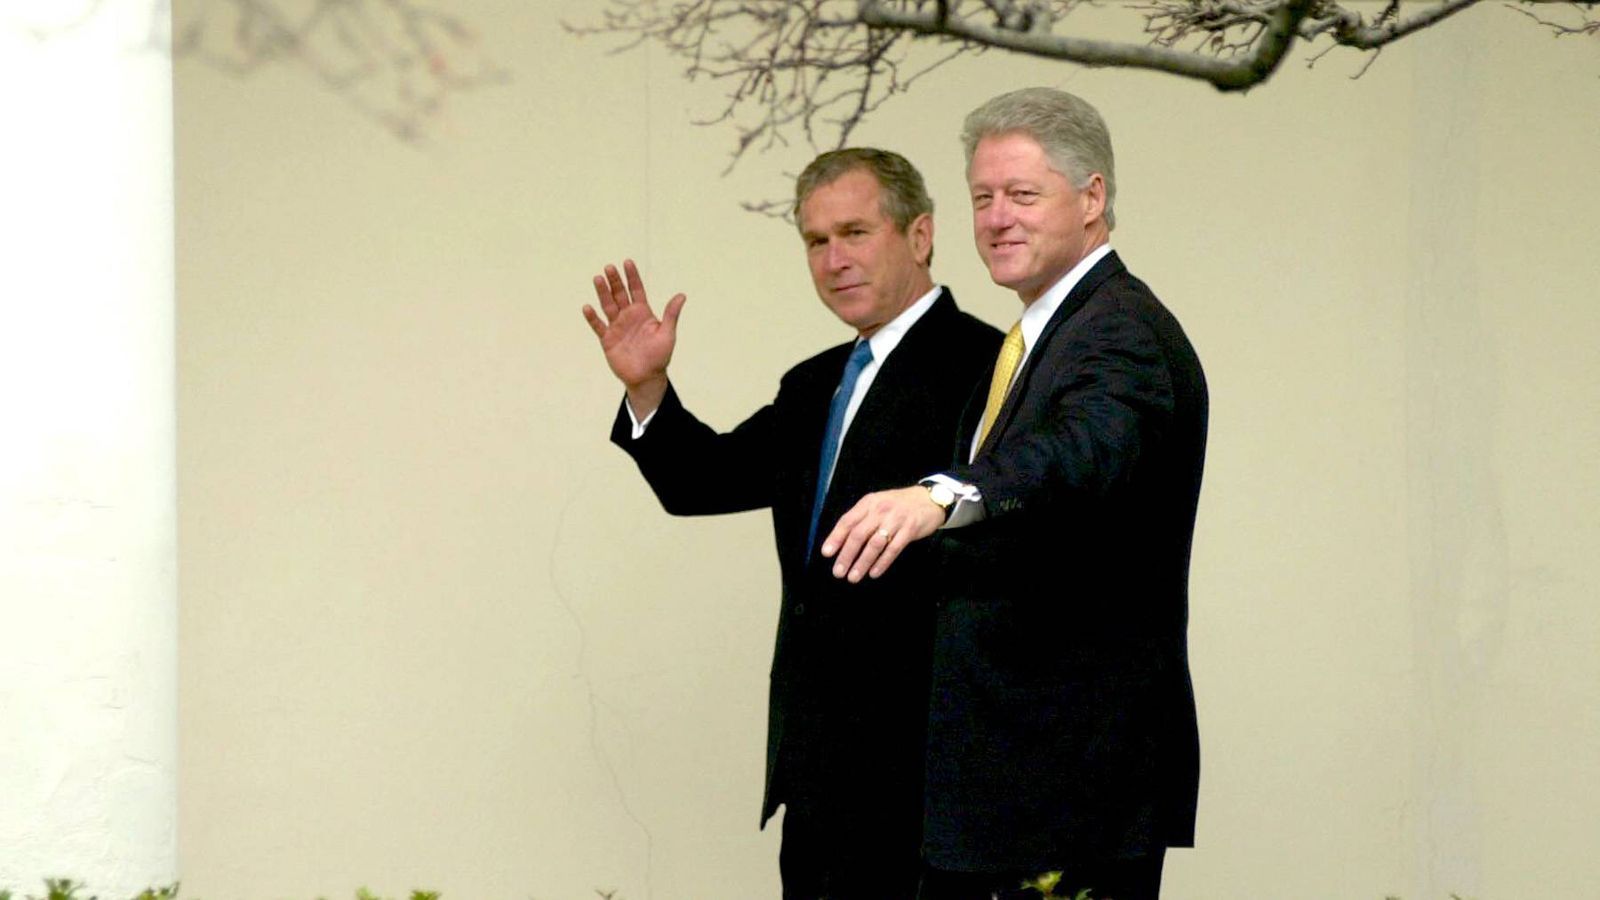 
                <strong>George W. Bush wird neuer US-Präsident</strong><br>
                Im selben Jahr gibt es auch einen neuen US-Präsidenten. George W. Bush (links) setzt sich in einem Kopf-an-Kopf-Rennen gegen Al Gore durch. Dabei verhindert der Supreme Court eine Neuauszählung in Florida, die Gore verlangt. Somit gewinnt Bush die Wahl, obwohl er 500.000 Stimmen weniger hat.
              